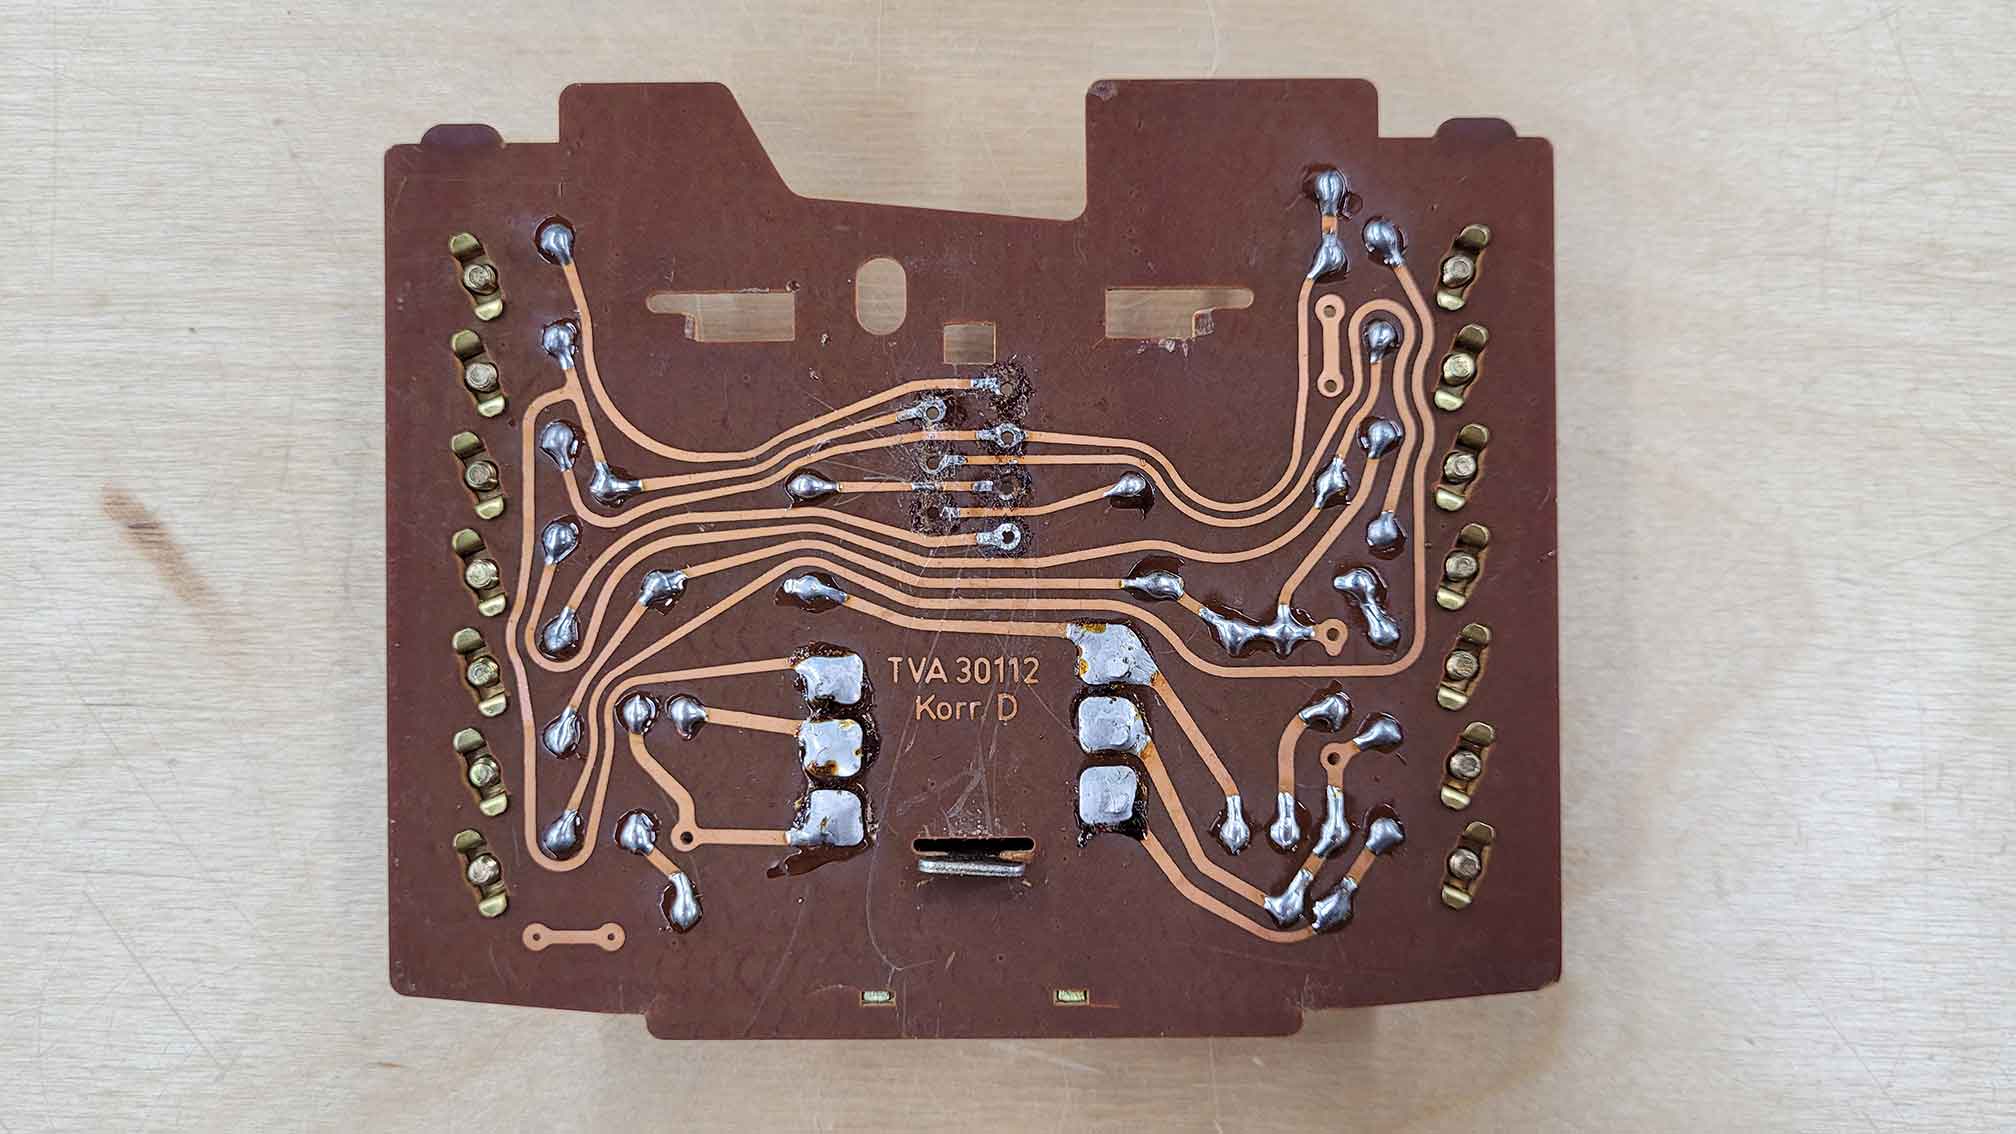 Old Circuit Board